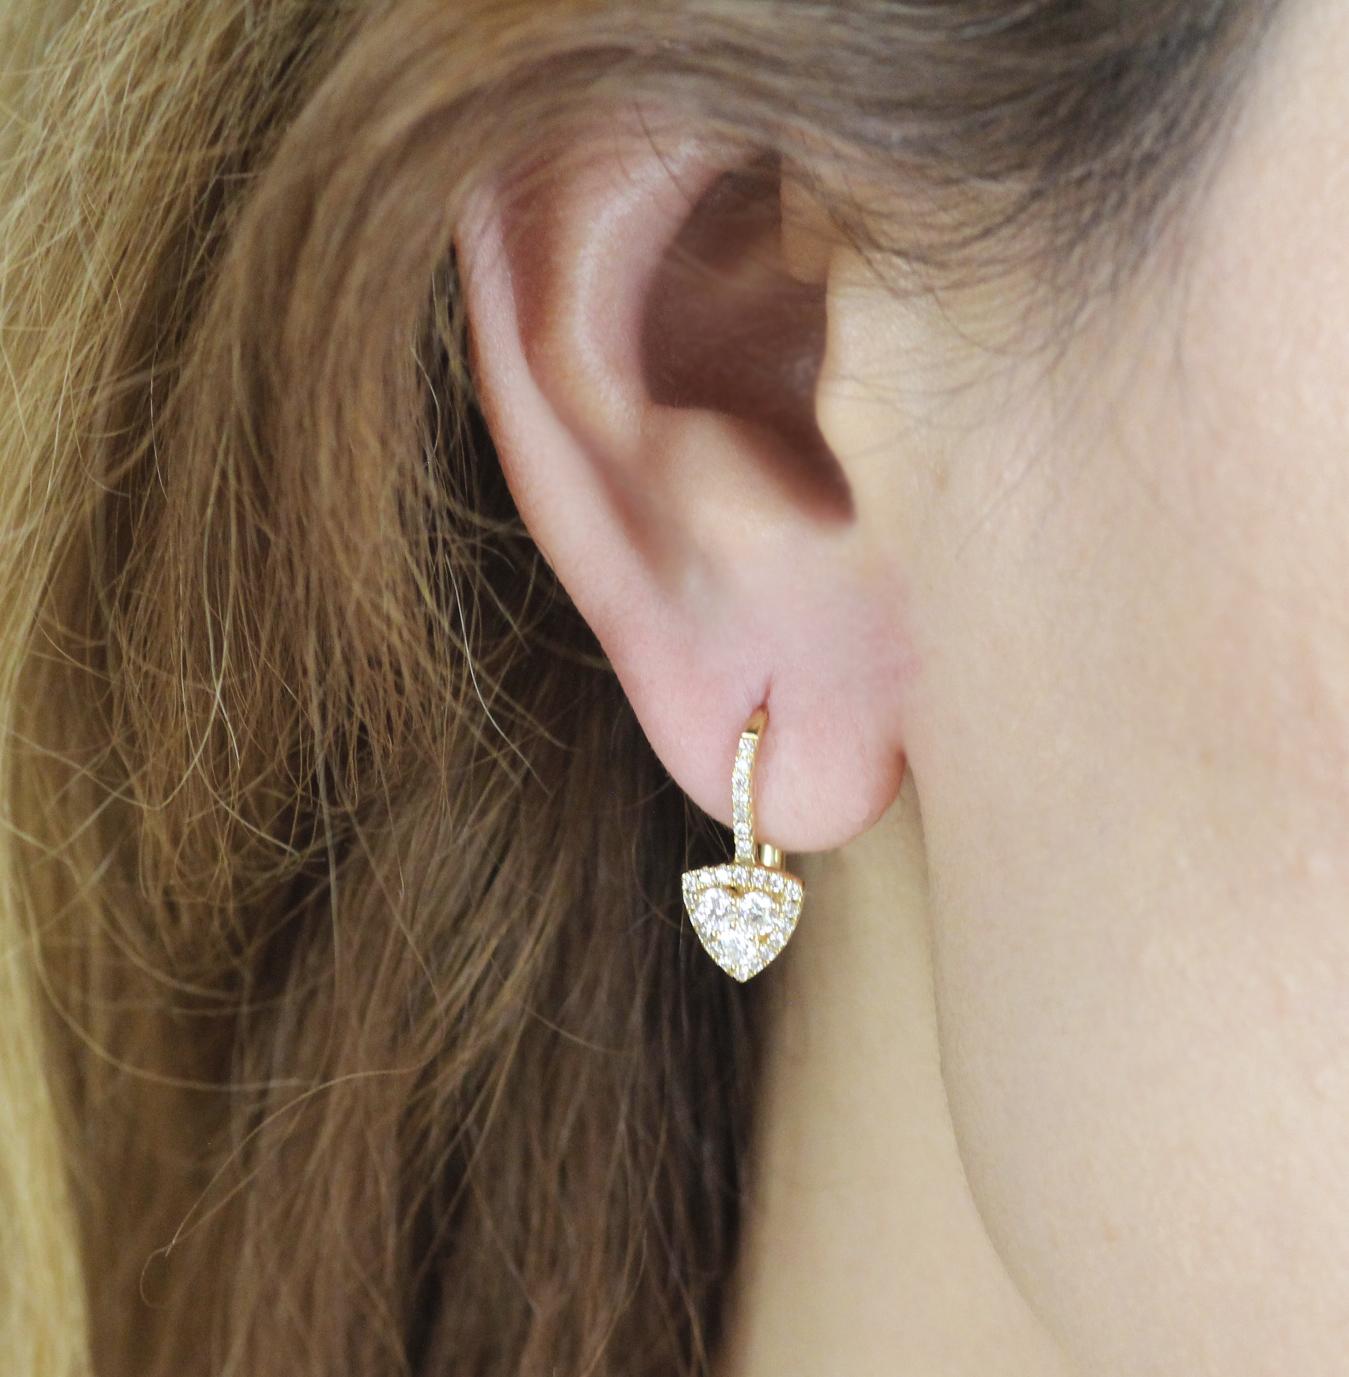 Ein zeitgenössisches Paar Ohrringe mit Billionenmotiv, besetzt mit runden weißen Diamanten im Brillantschliff, gefasst in 18-karätigem Gelbgold.

Die drei runden Brillanten in der Mitte haben einen Durchmesser von 2,7 mm und funkeln sowohl bei